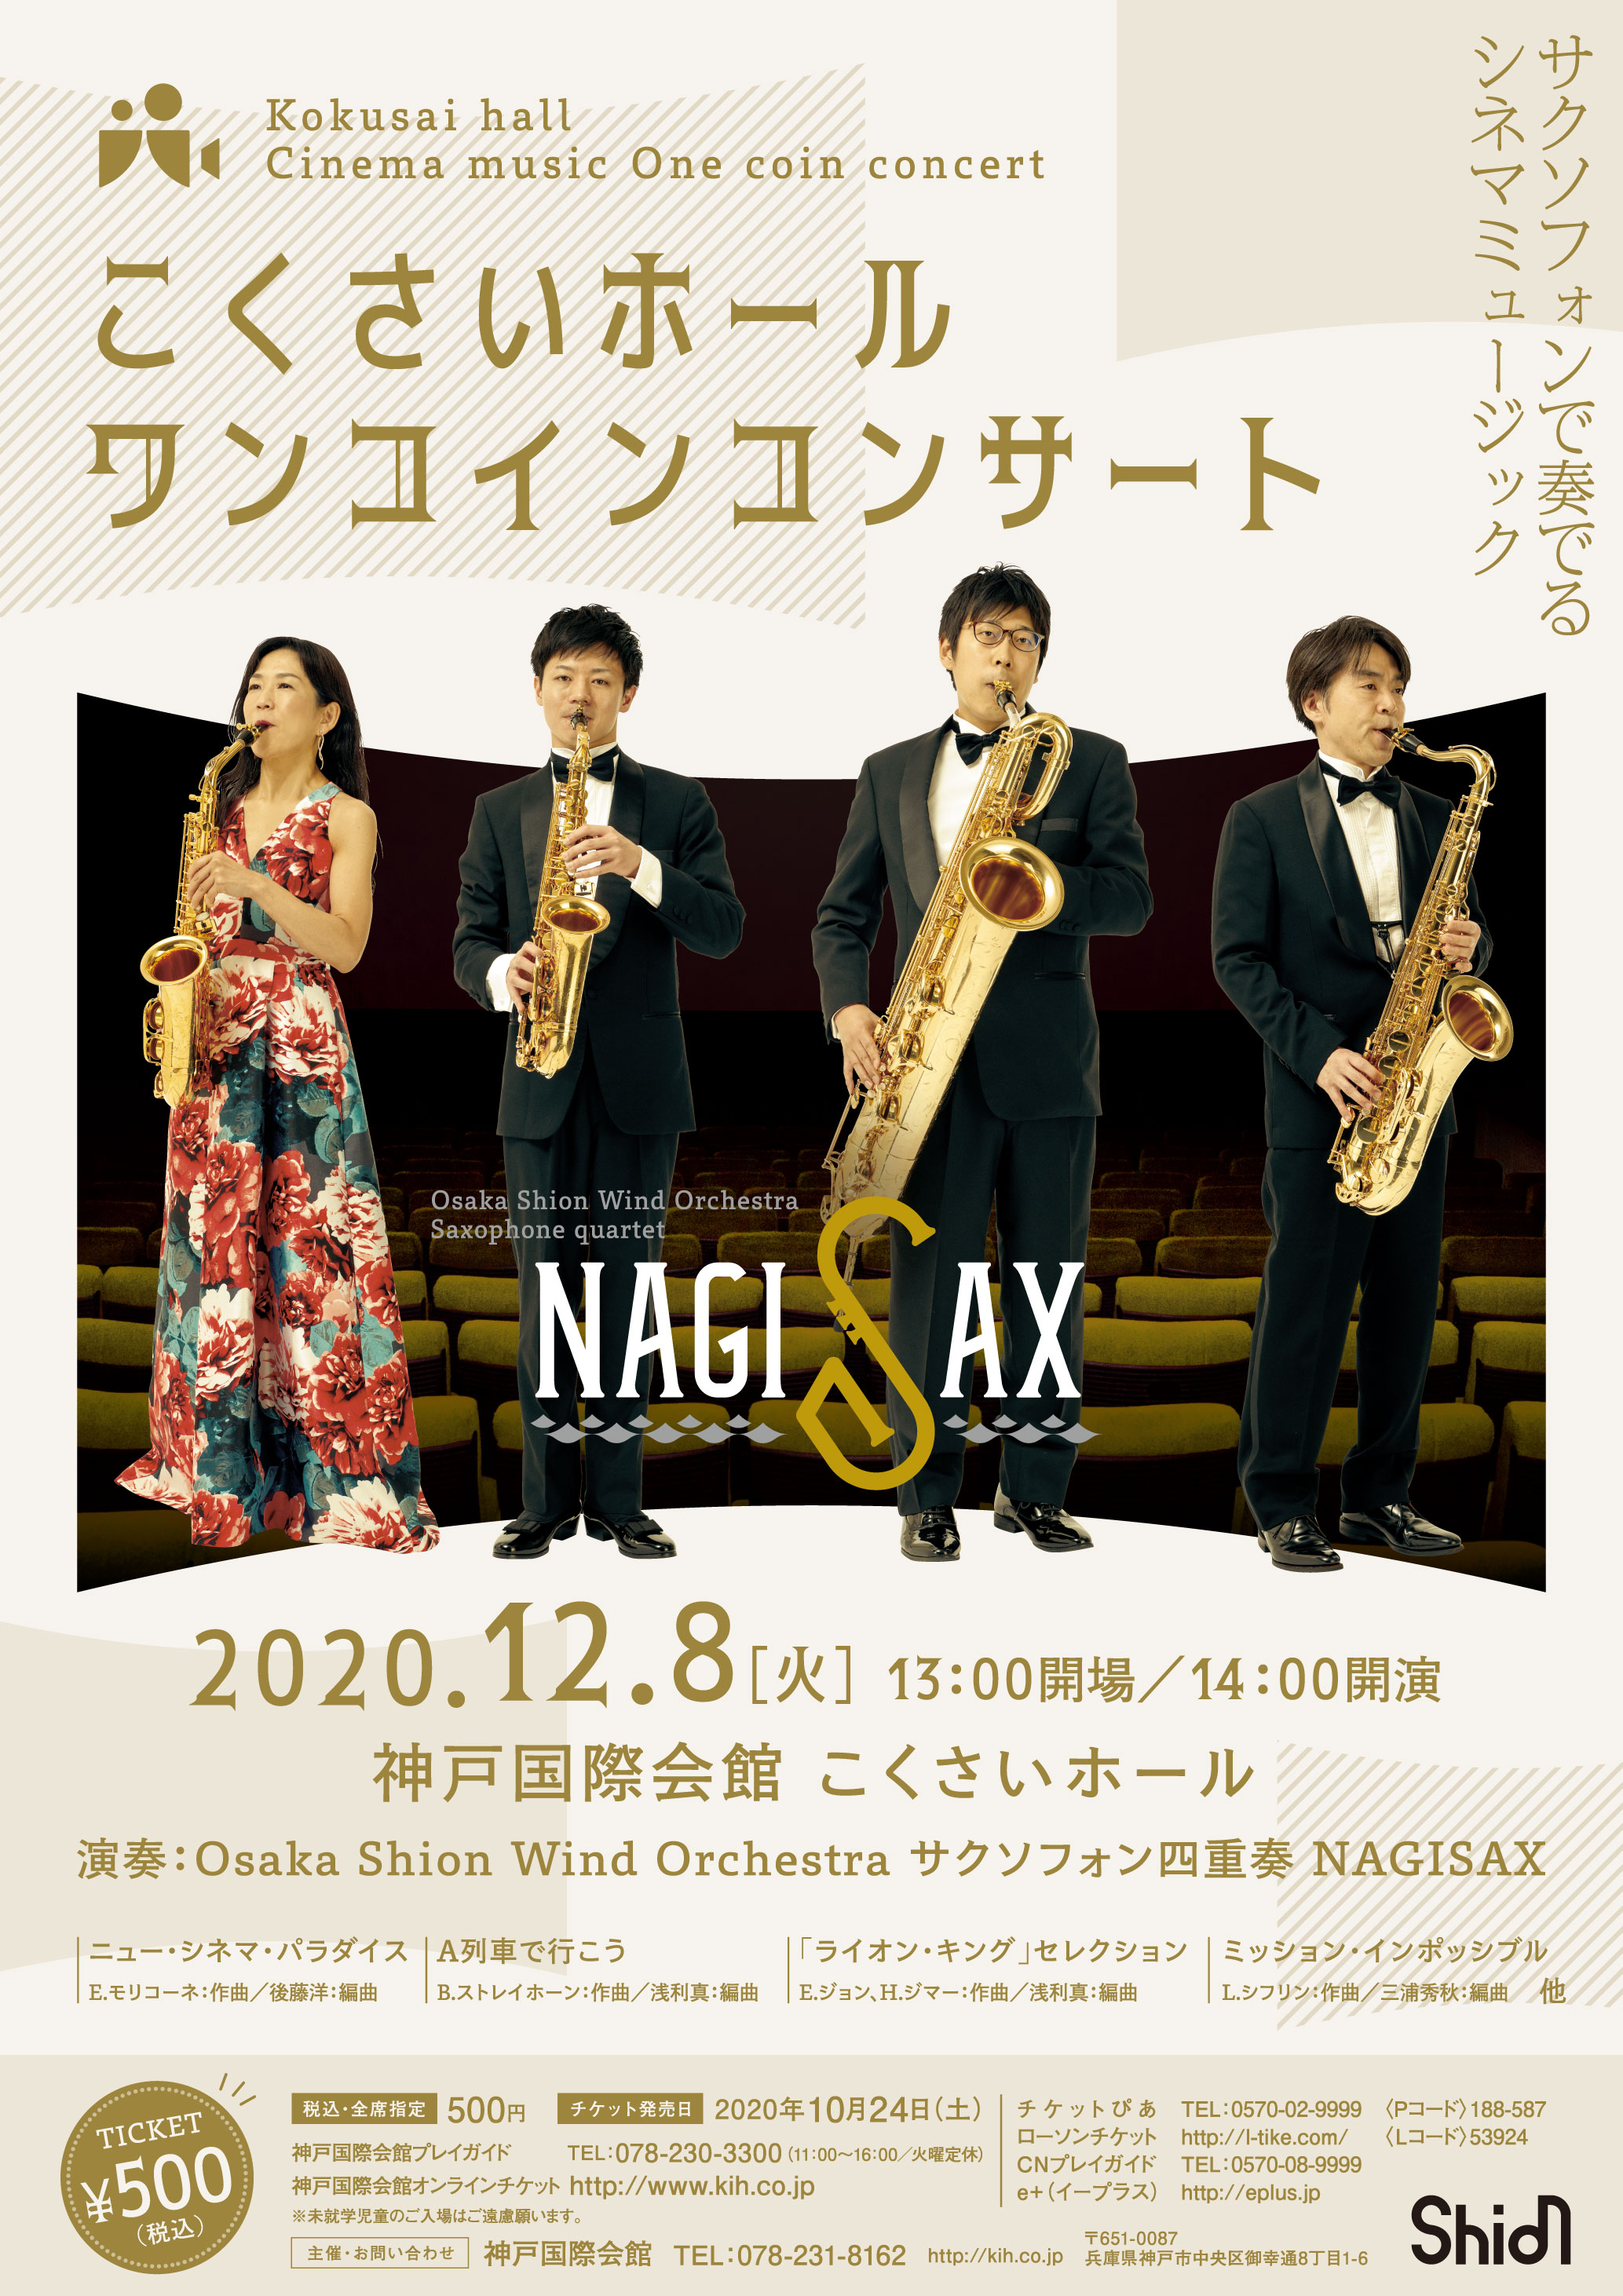 サクソフォンで奏でるシネマミュージック！Osaka Shion Wind Orchestraが誇る サクソフォン四重奏「NAGISAX」が登場。